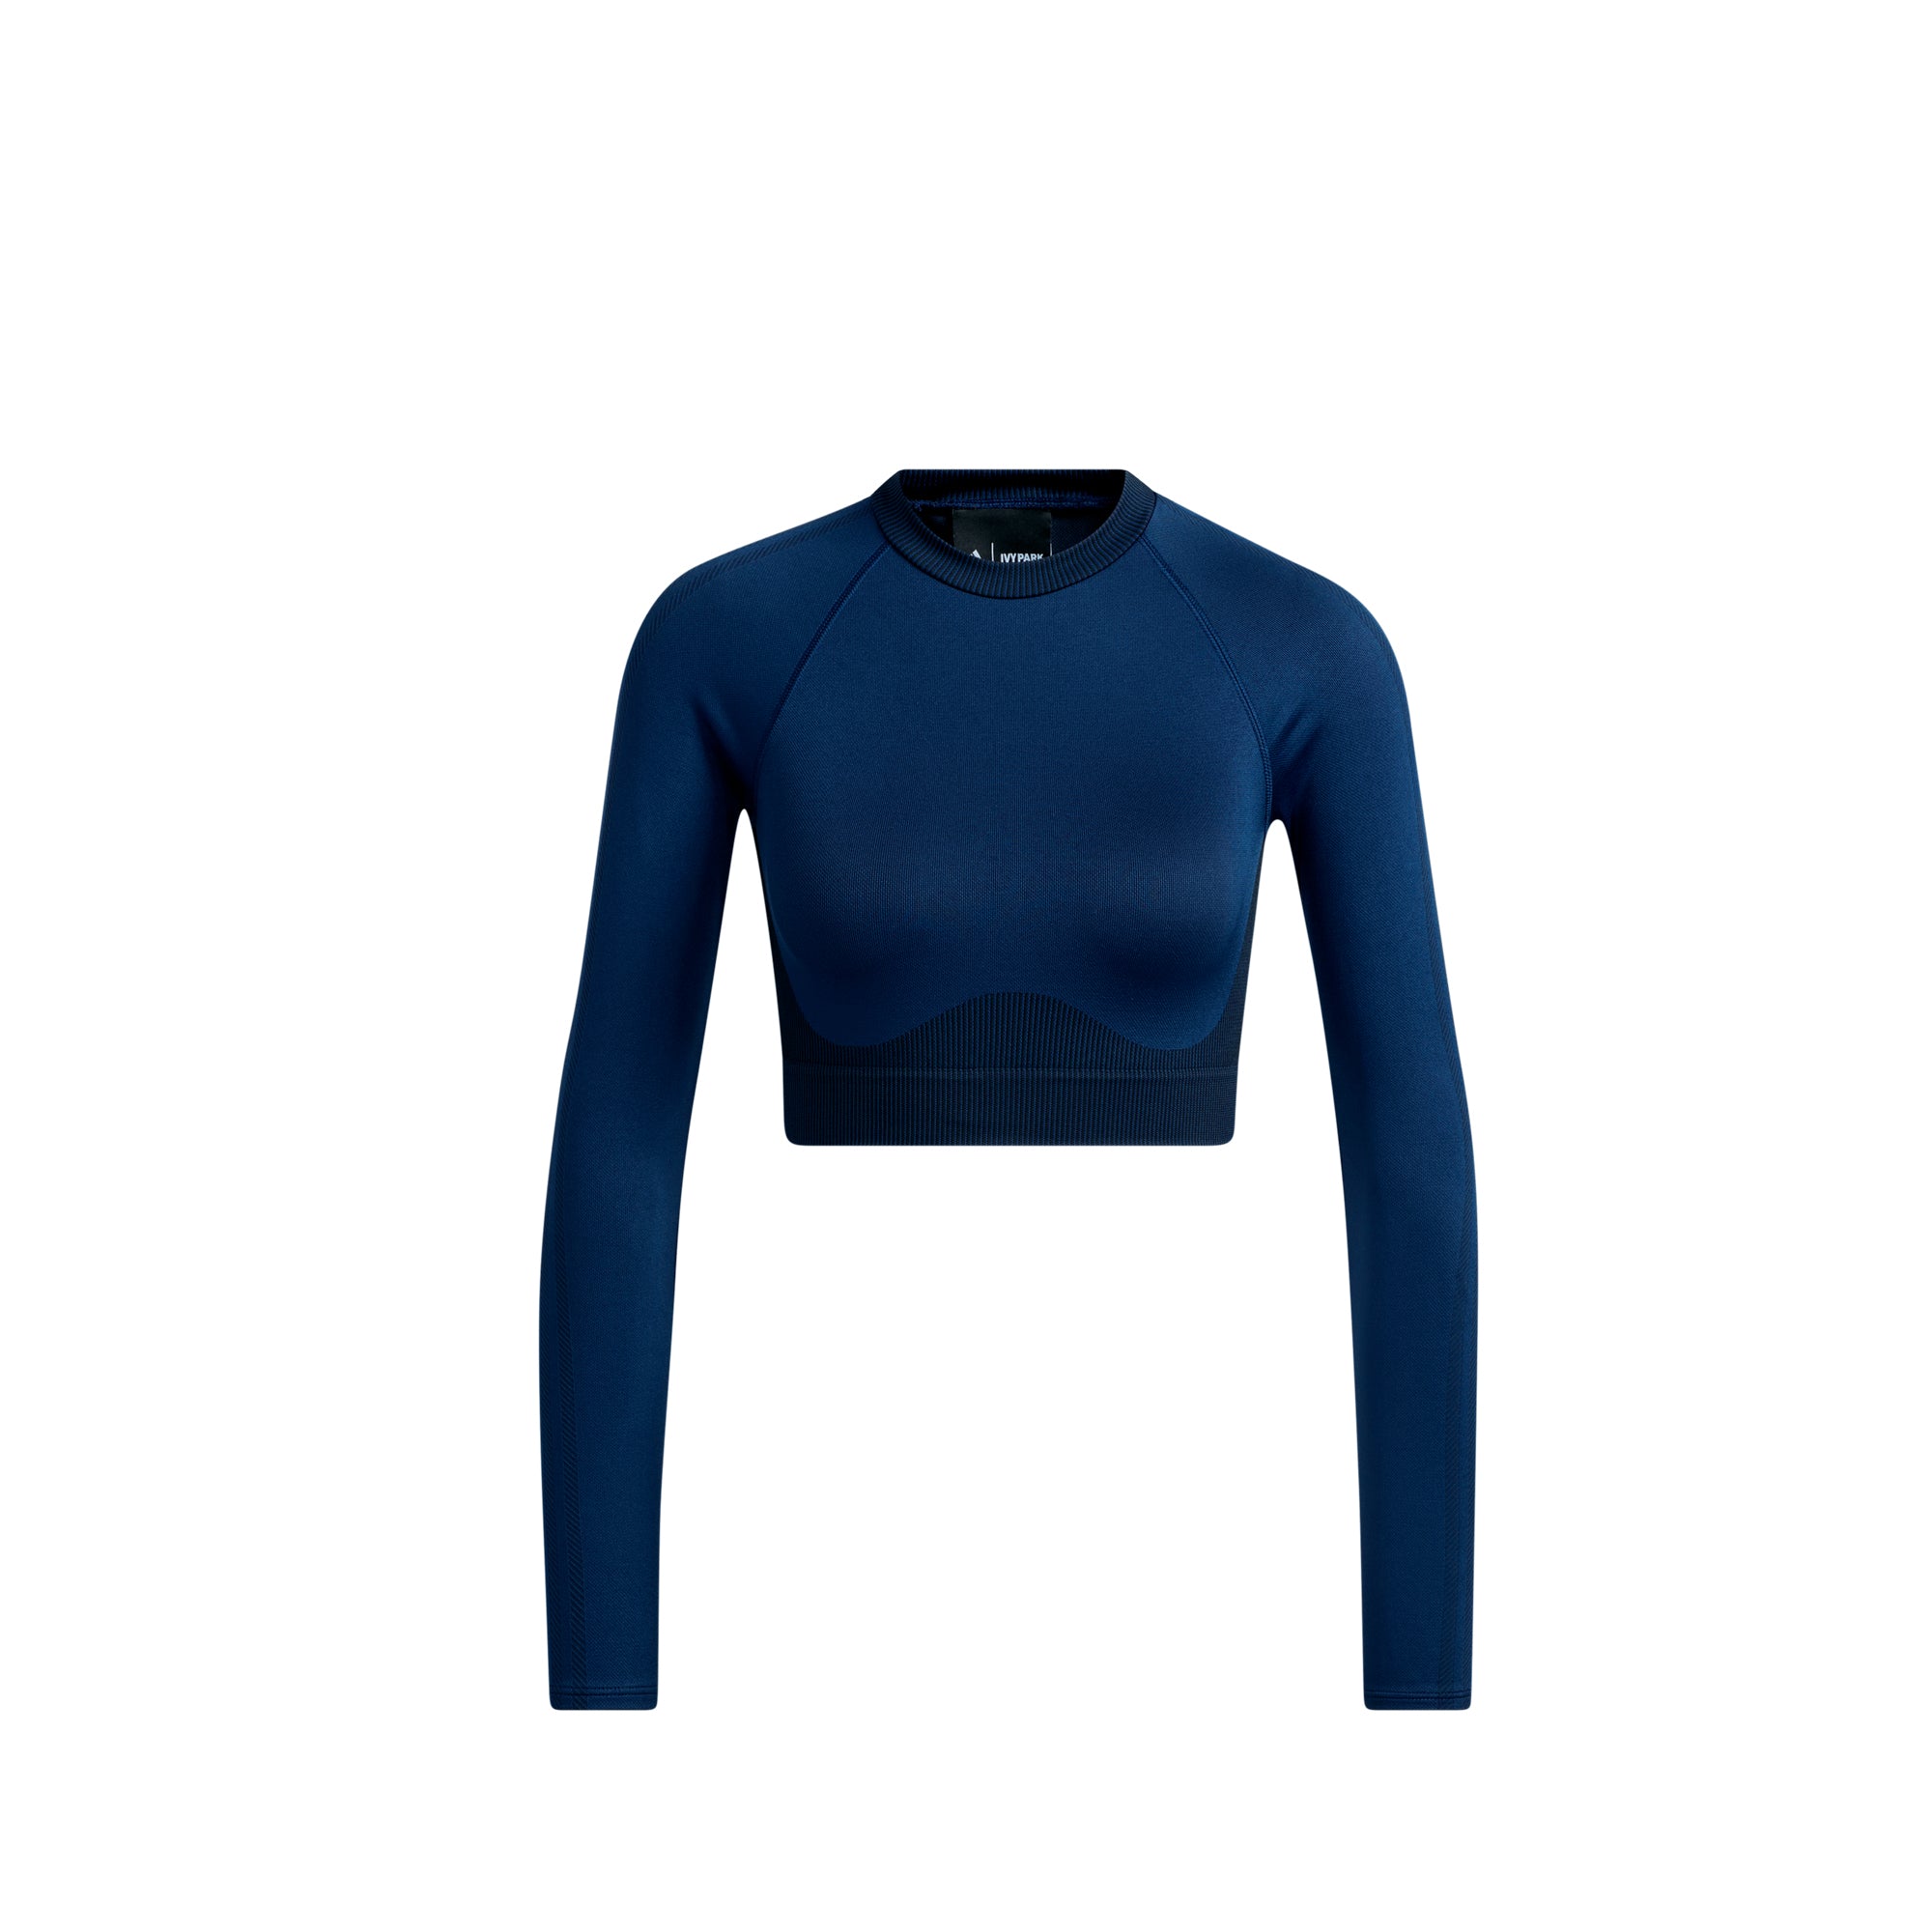 Adidas x Ivy Park Butter 2.0 Womens Knit Blue\' \'Dark Crop Top – Extra